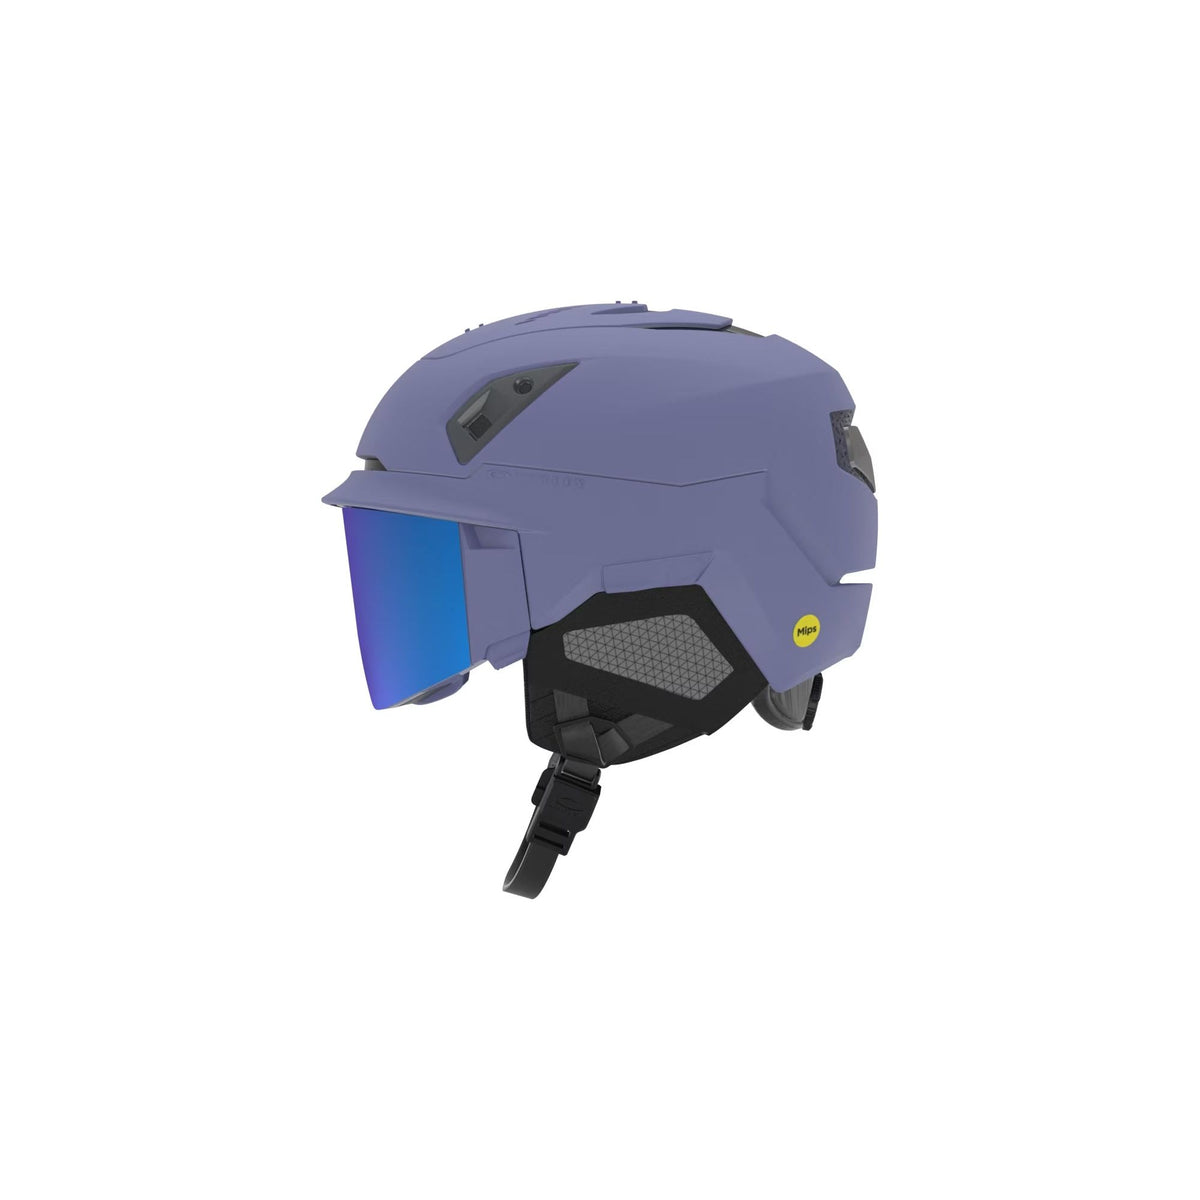 Oakley MOD7 Helmet